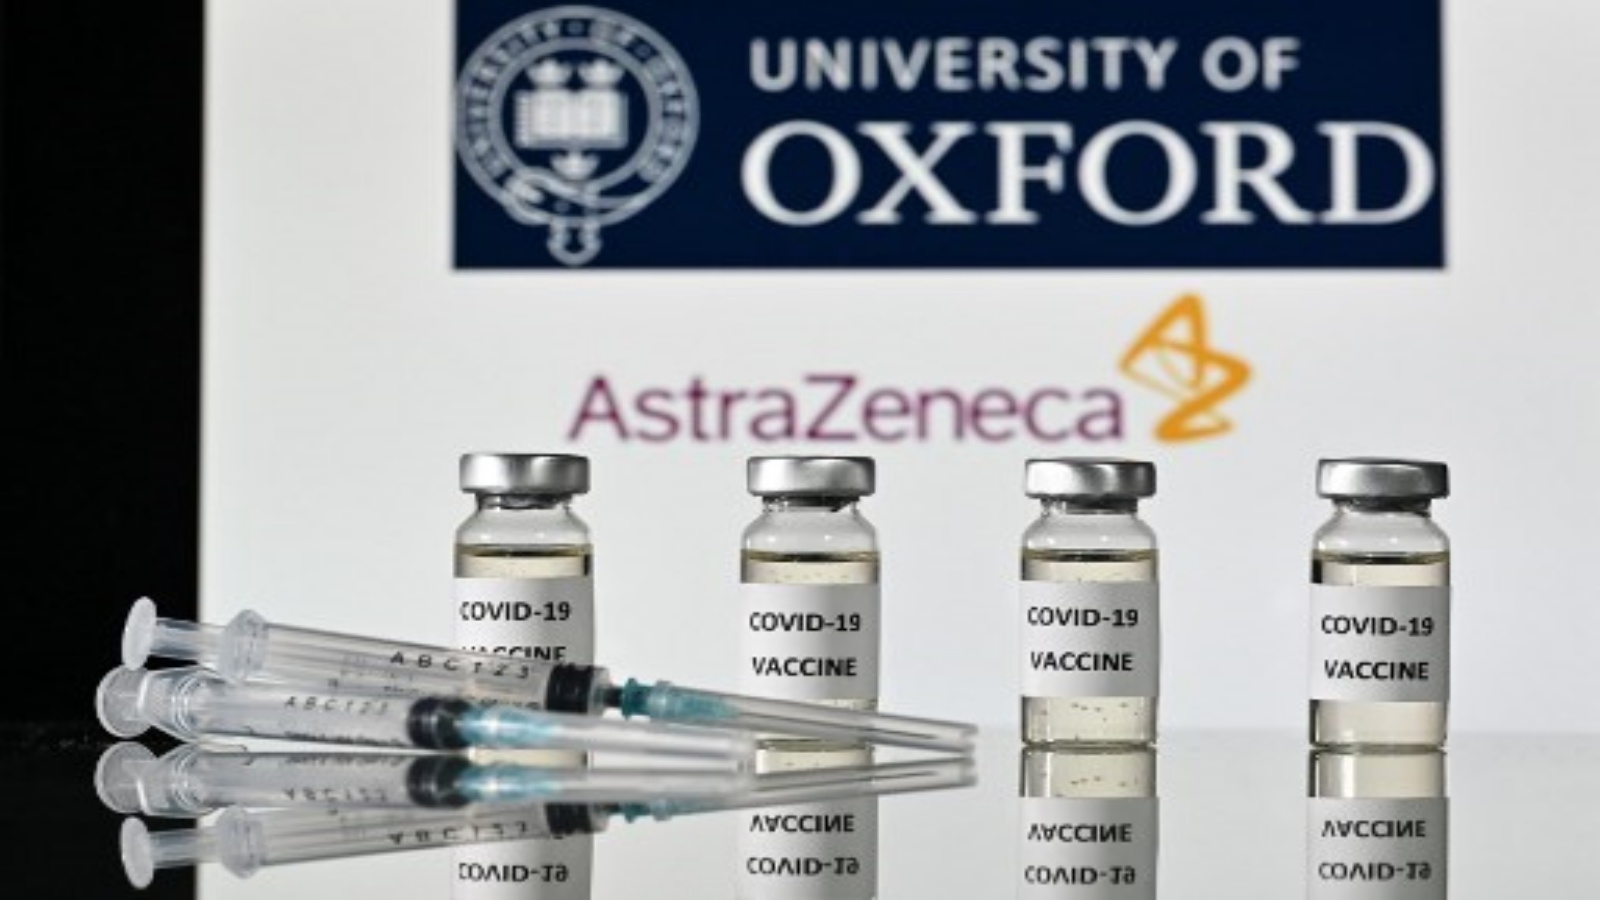  صورة توضيحية قوارير بها ملصقات لقاح Covid-19 مرفقة ومحاقن ، مع شعار جامعة أكسفورد وشريكتها شركة الأدوية البريطانية AstraZeneca ، في 17 نوفمبر 2020